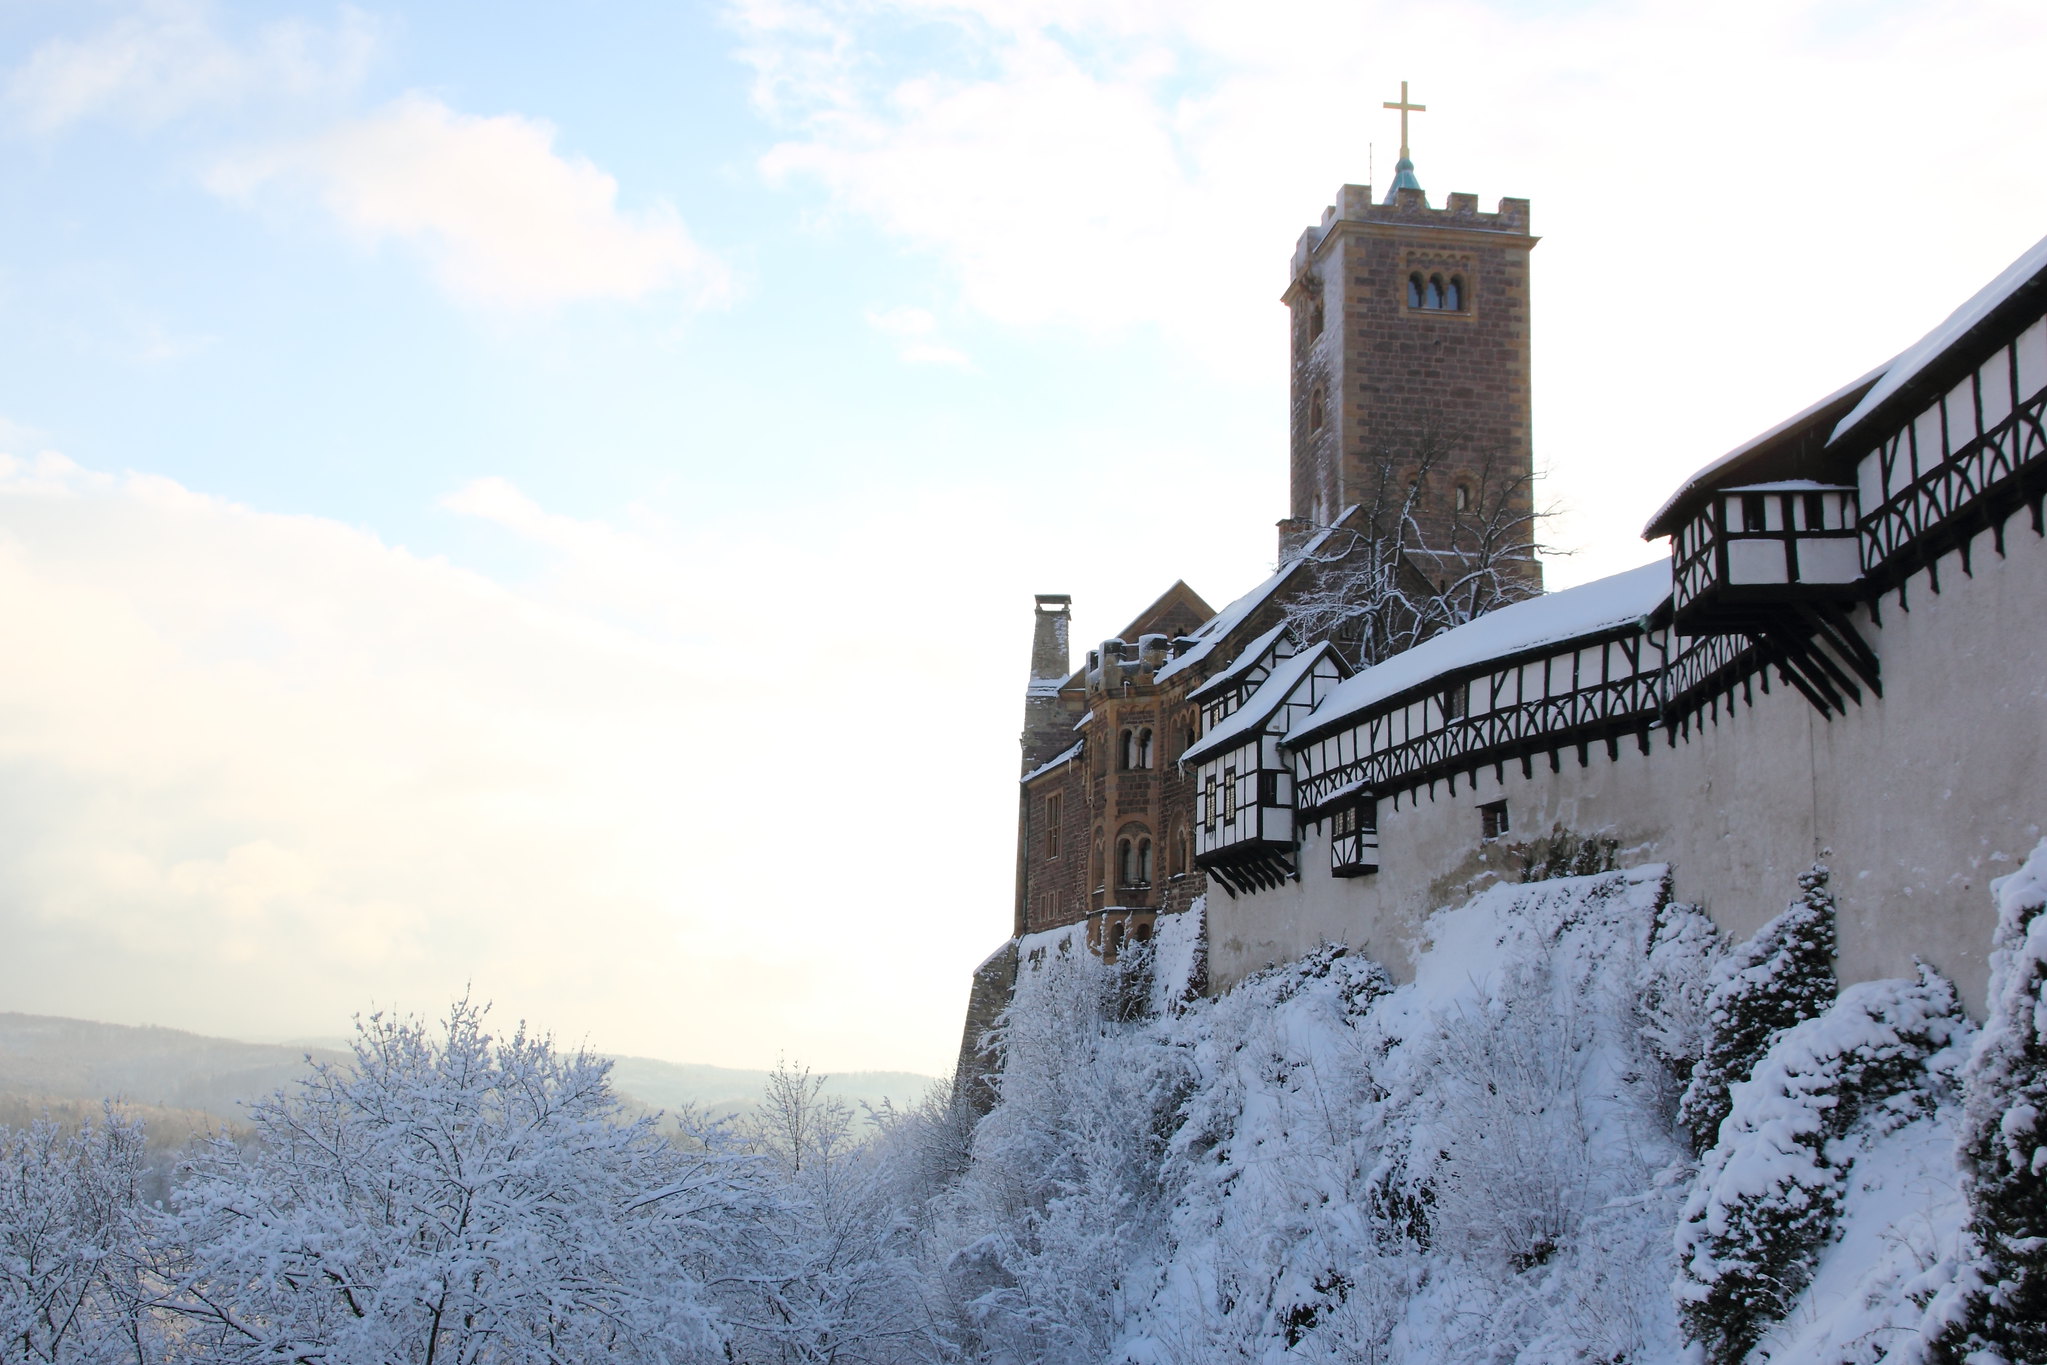 Wartburg with snow | Schnee auf der Wartburg *Winter 2012, Eisenach* EXPLORED